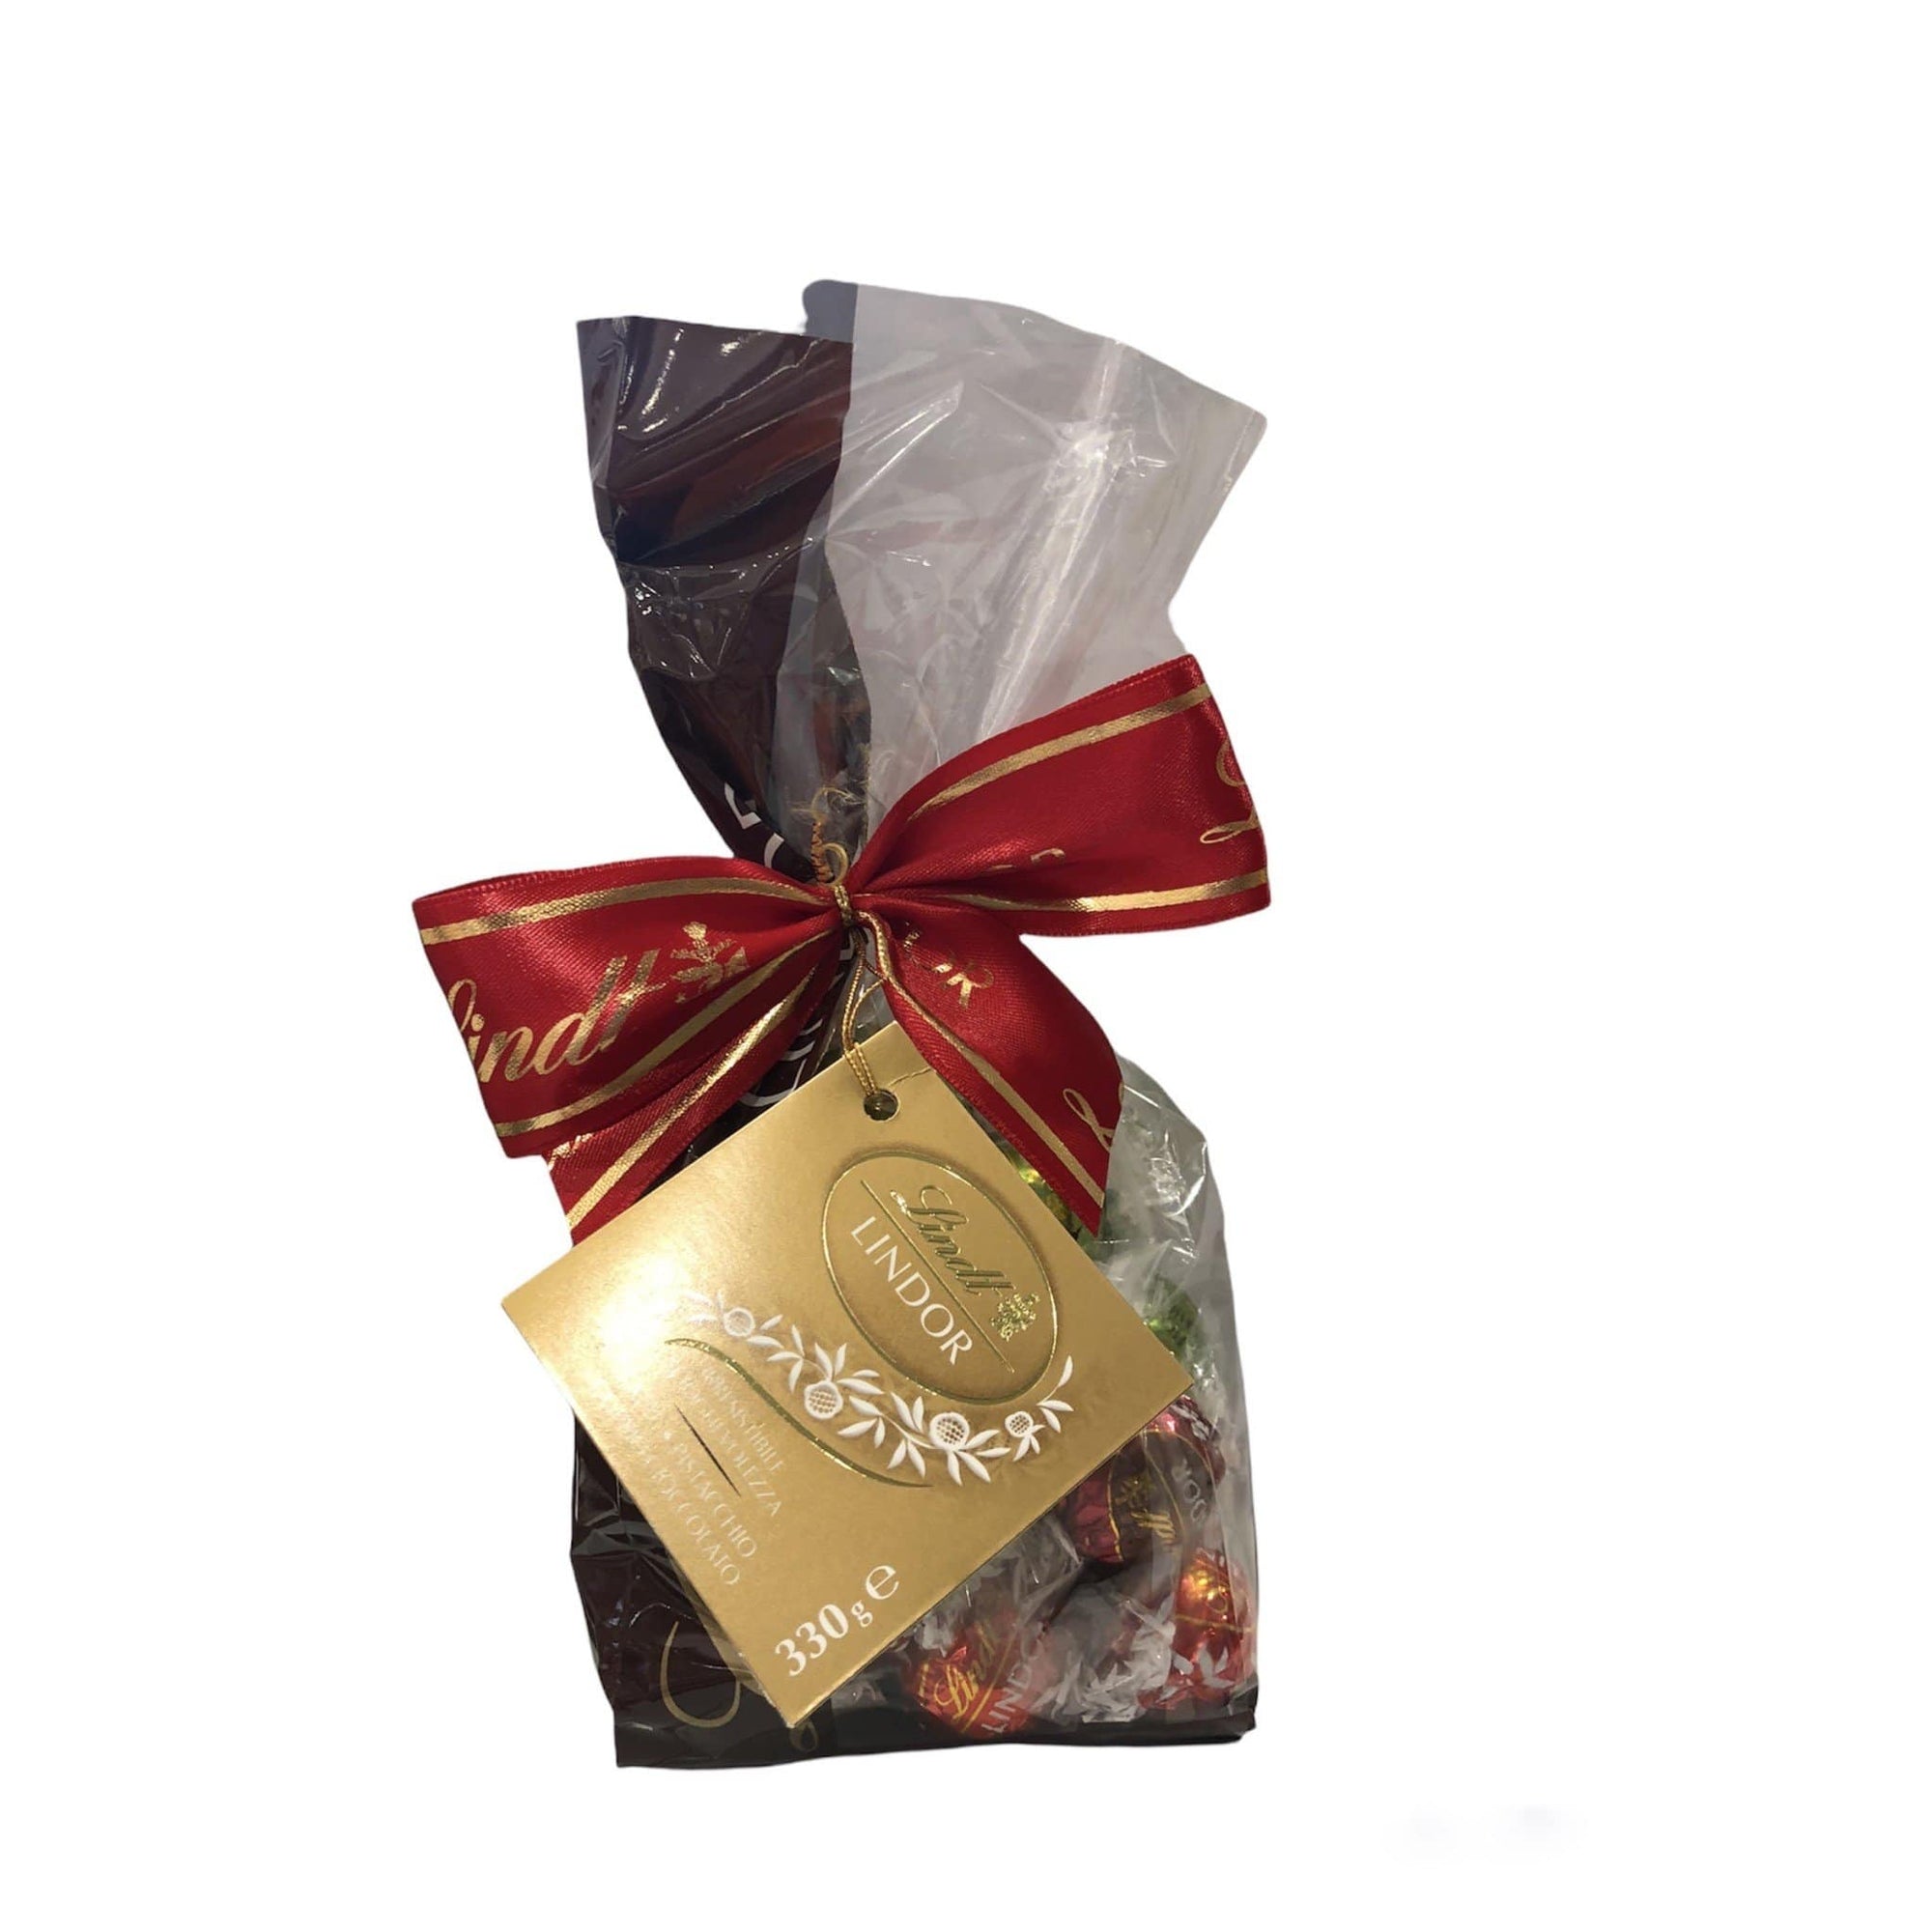 Sacchetto Lindt cioccolatini boules assortiti confezione 330gr - Dolci pensieri gift